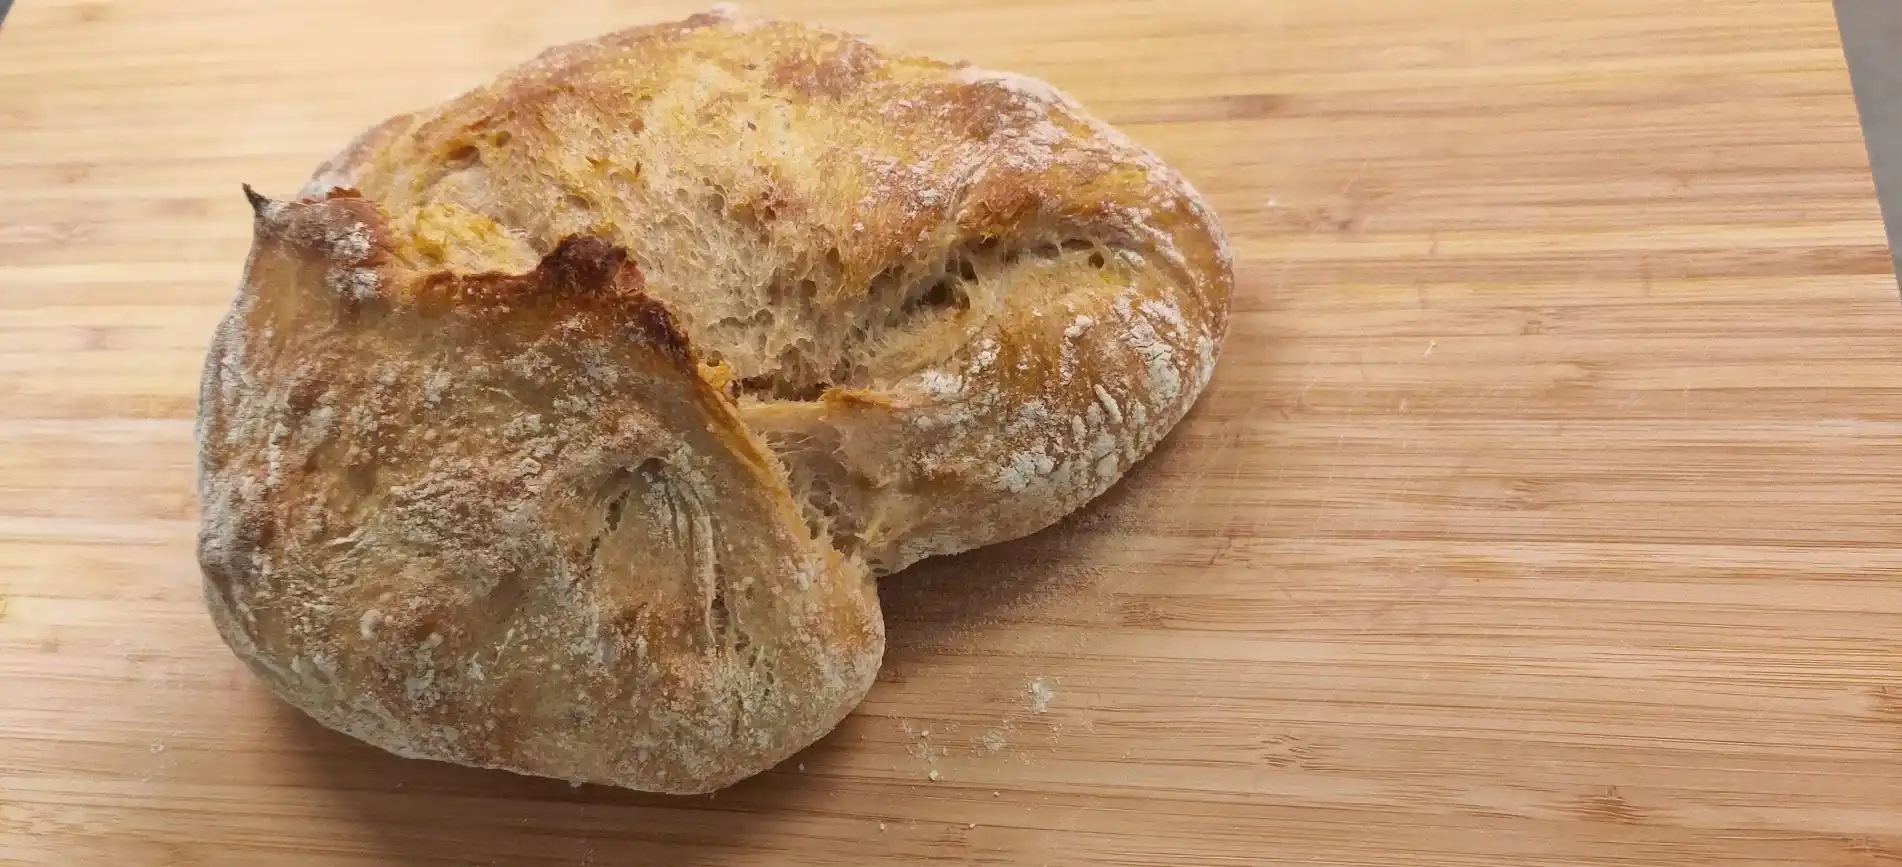 Potato sourdough bread